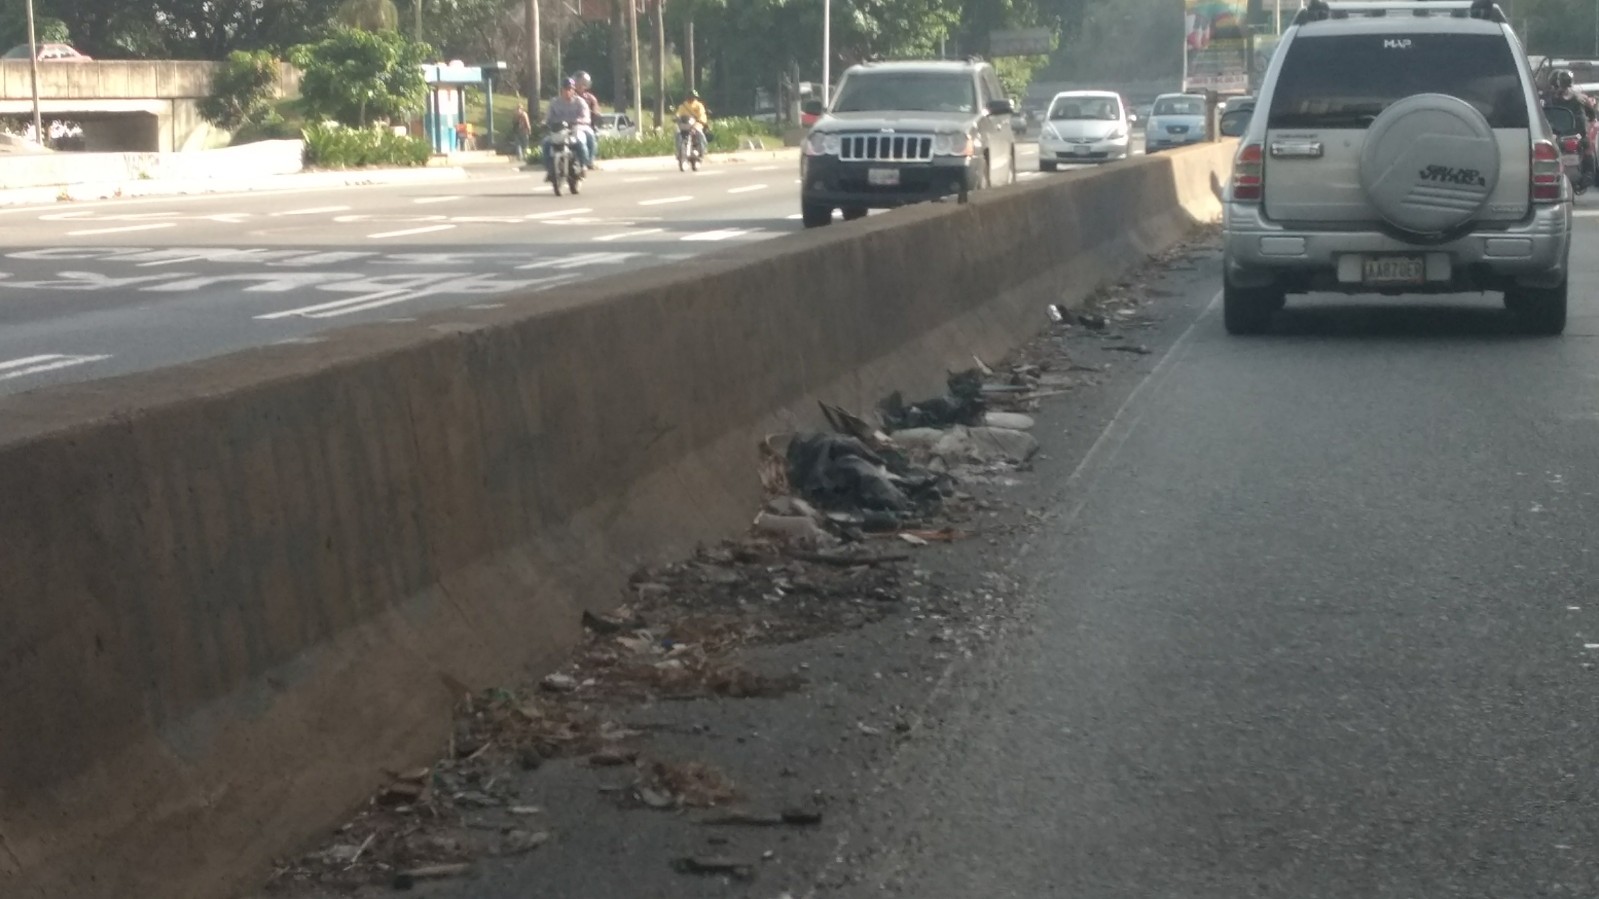 Esto es socialismo: La autopista Prados del Este sin VAO y convertida en un basurero (fotos)